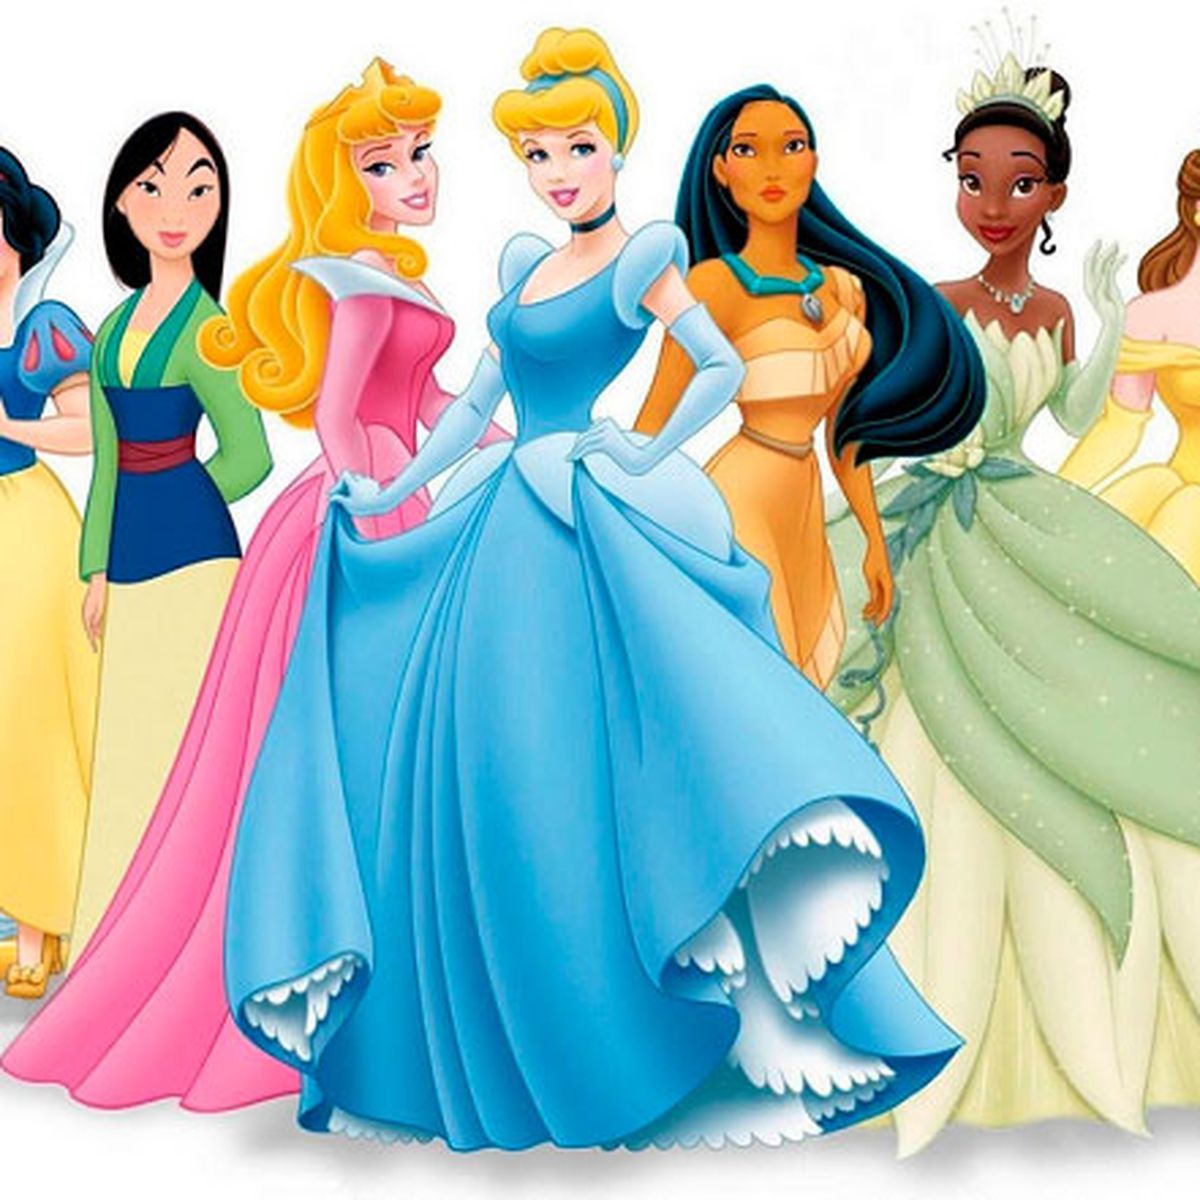 Disney enumera los rasgos que debería tener una princesa moderna